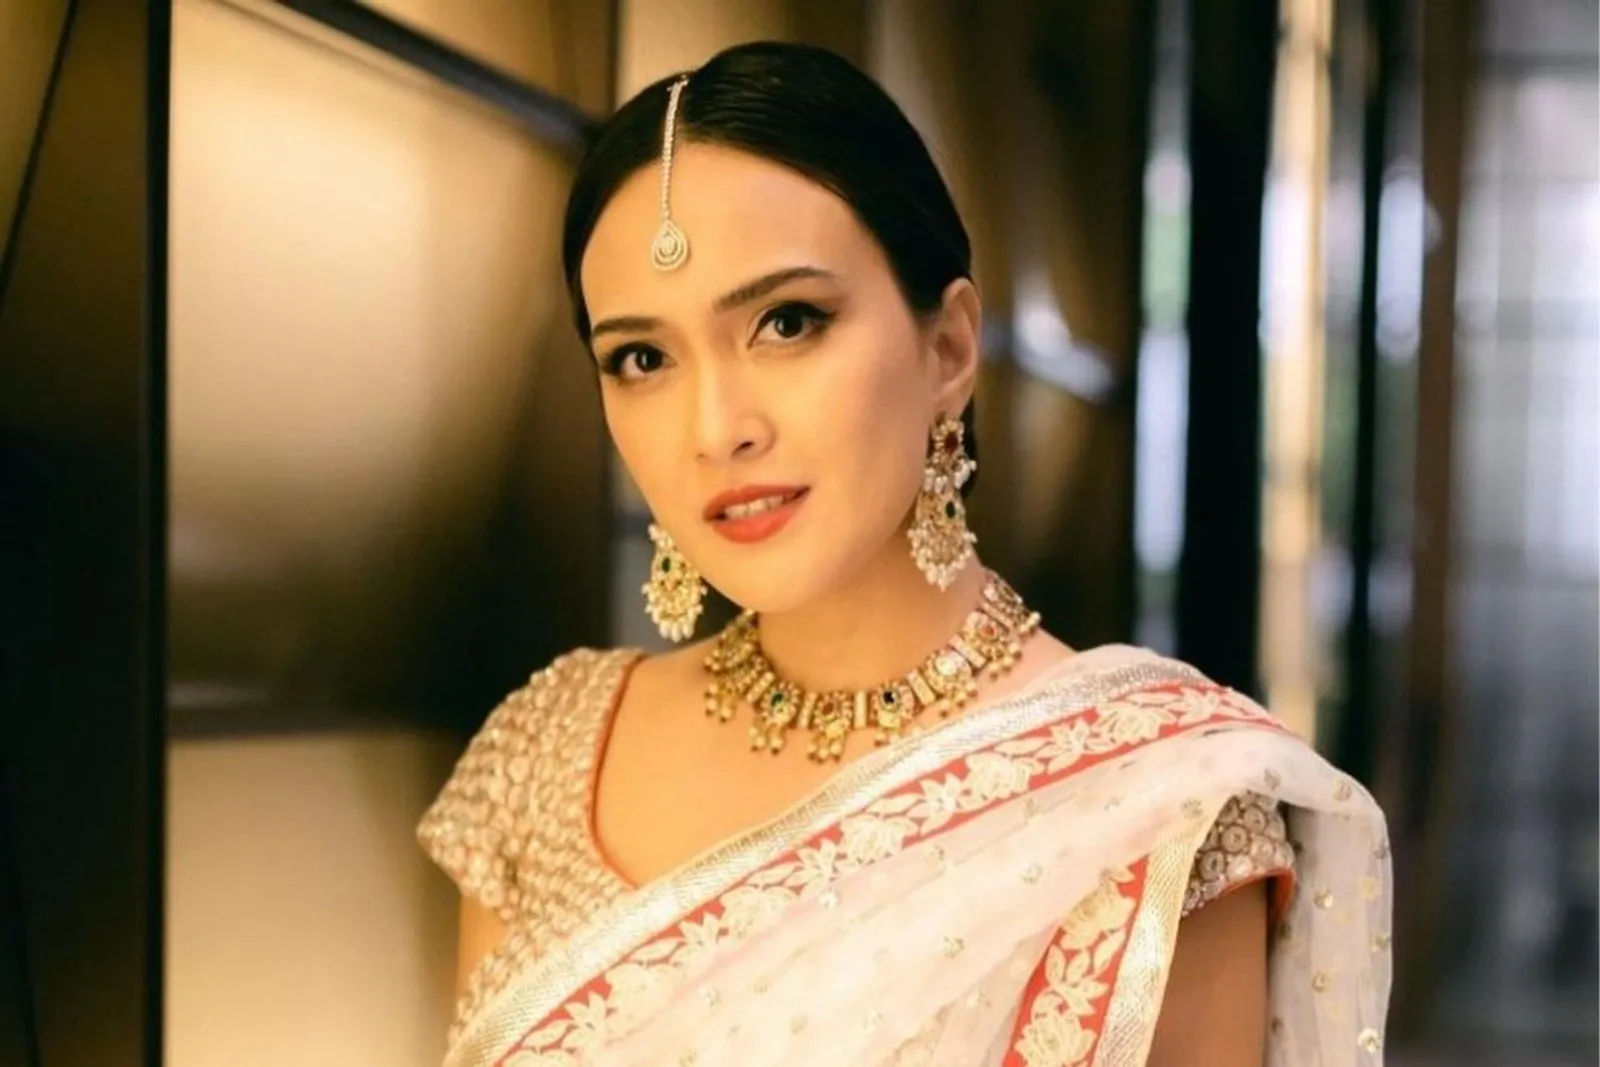 Tampil Bak Artis Bollywood, Intip 7 Gaya Seleb Kenakan Baju India